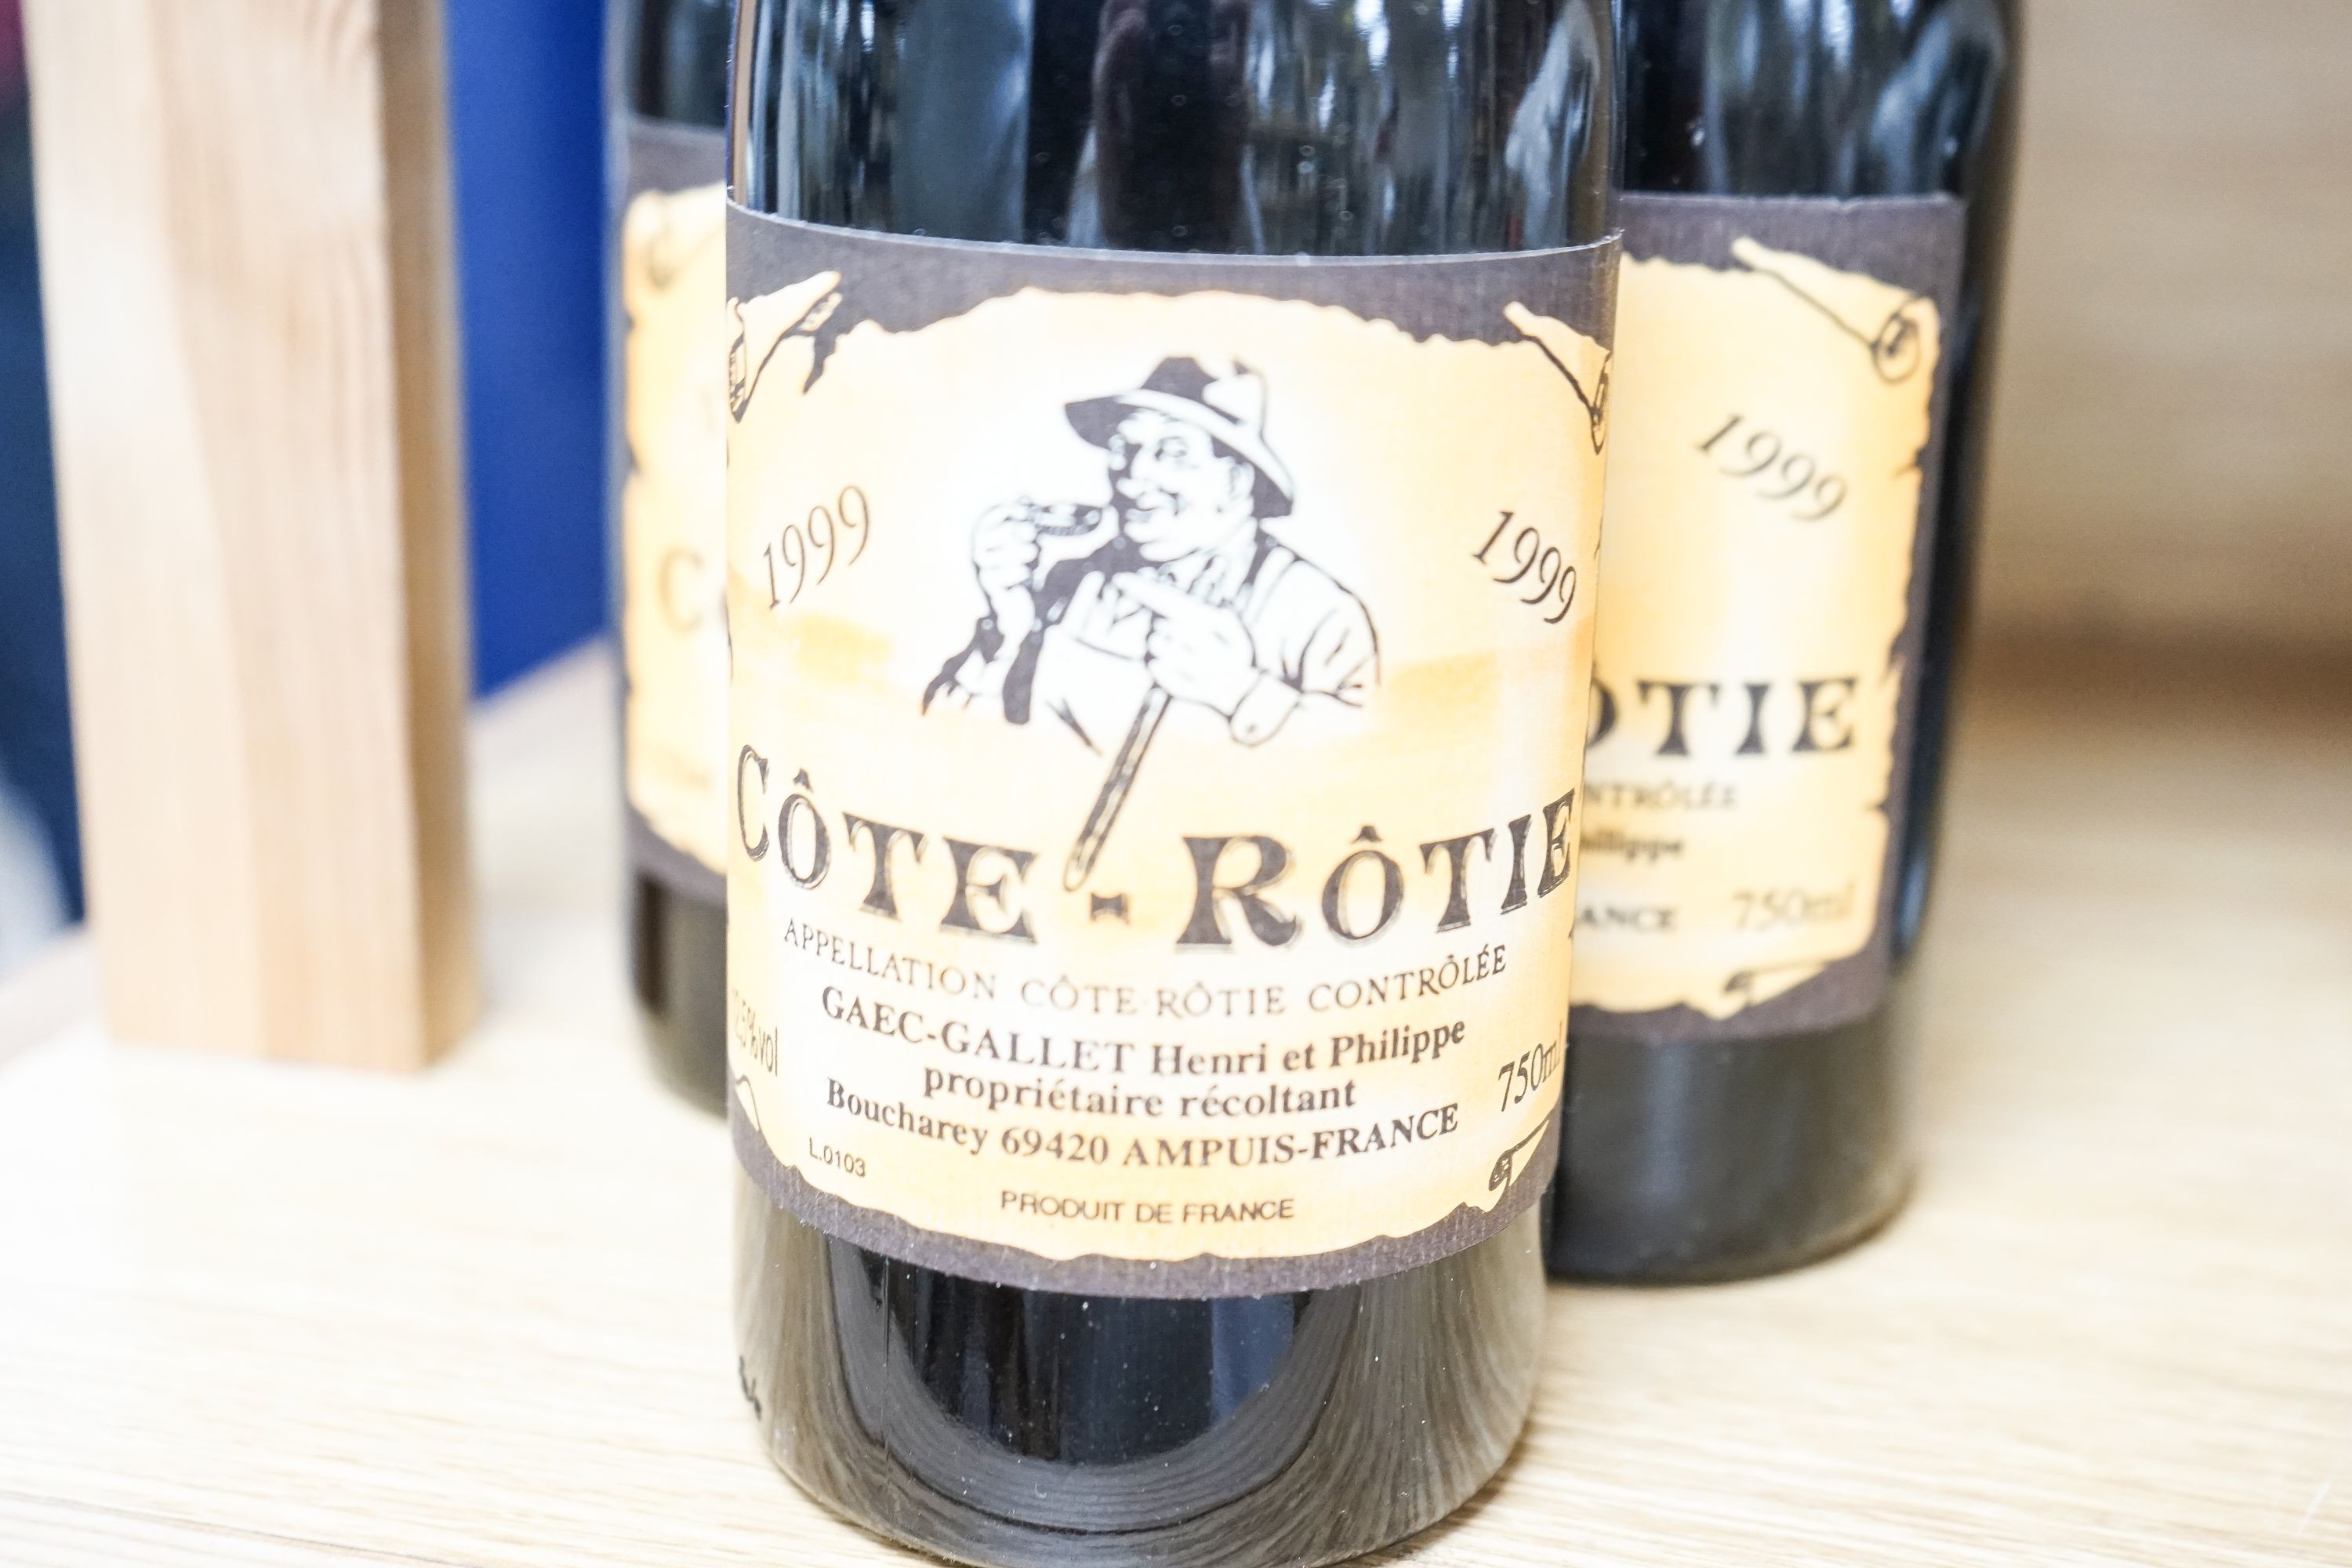 Nine bottles of Cote Rotie, 1999